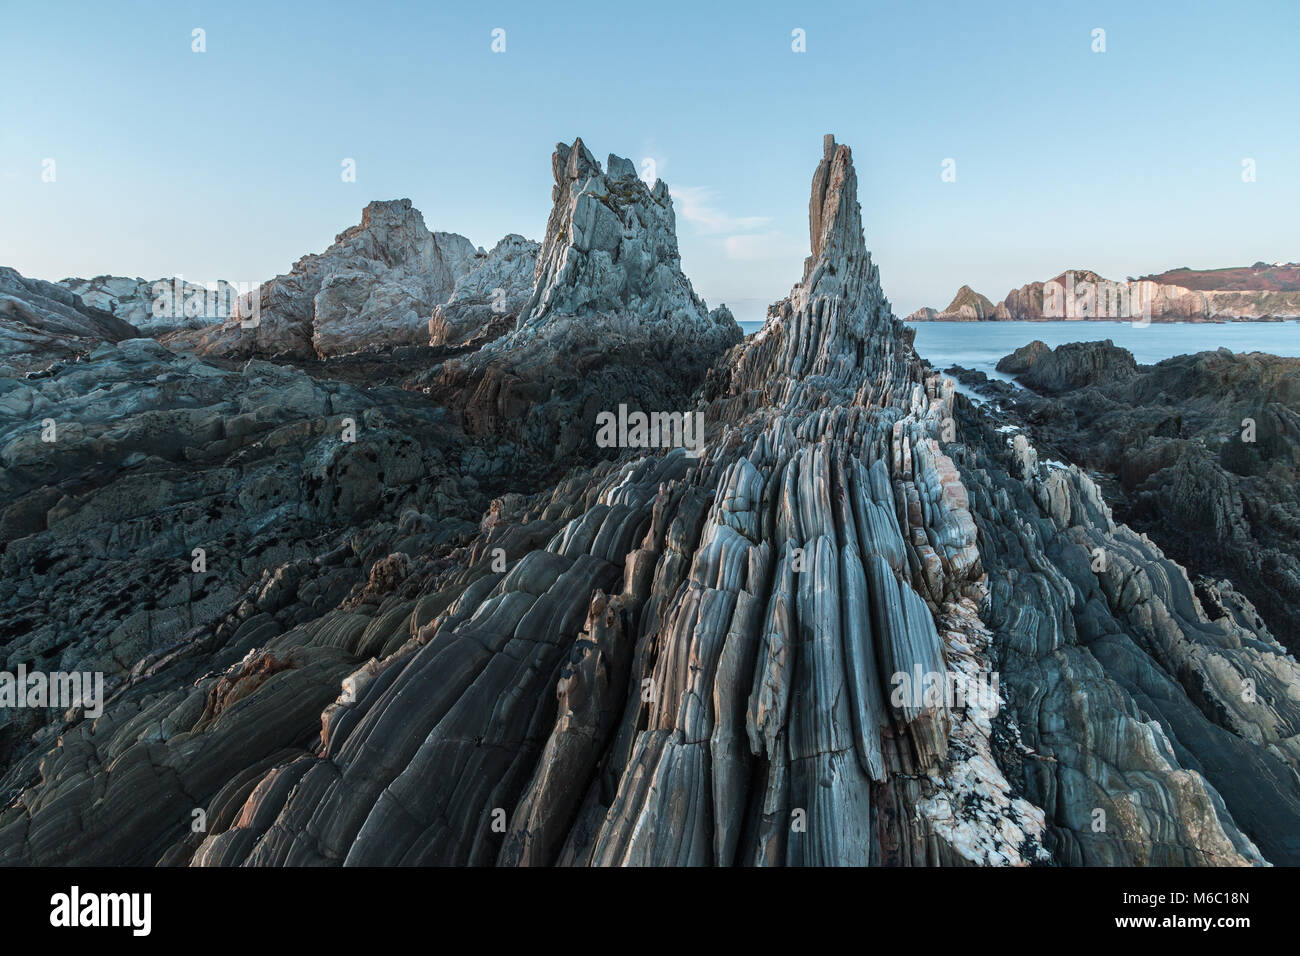 La playa de Gueirua, un inquietante paisaje de afiladas rocas que emergen del océano, finge ser de otro mundo, con una impresionante belleza un Foto de stock